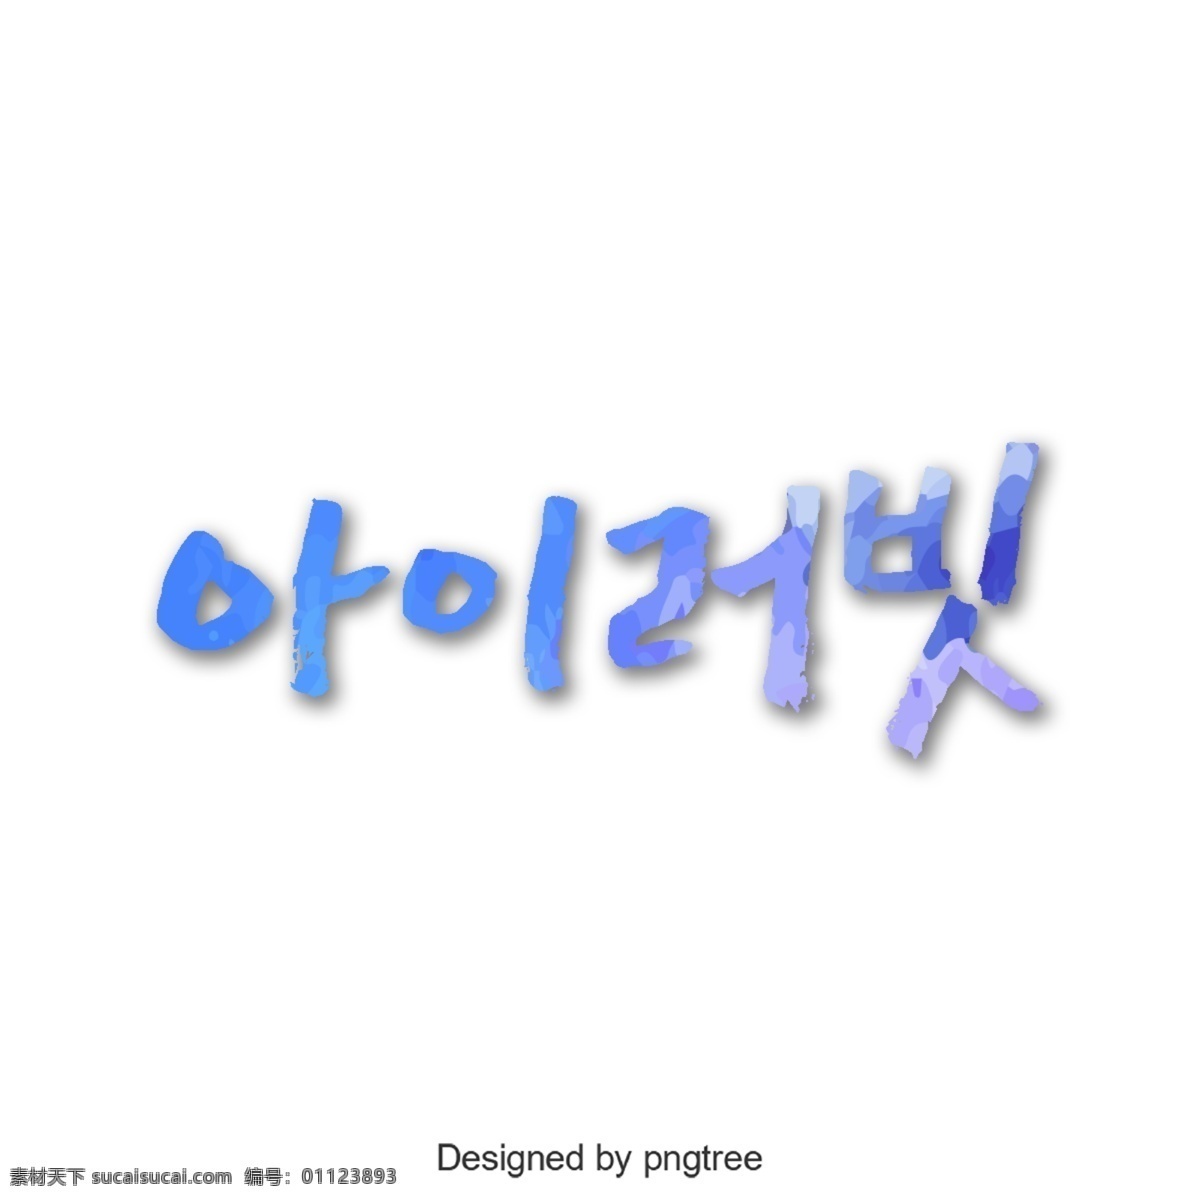 知道 韩国 人 字体 我喜欢它 这个梳子 进步 字形 韩文 简单